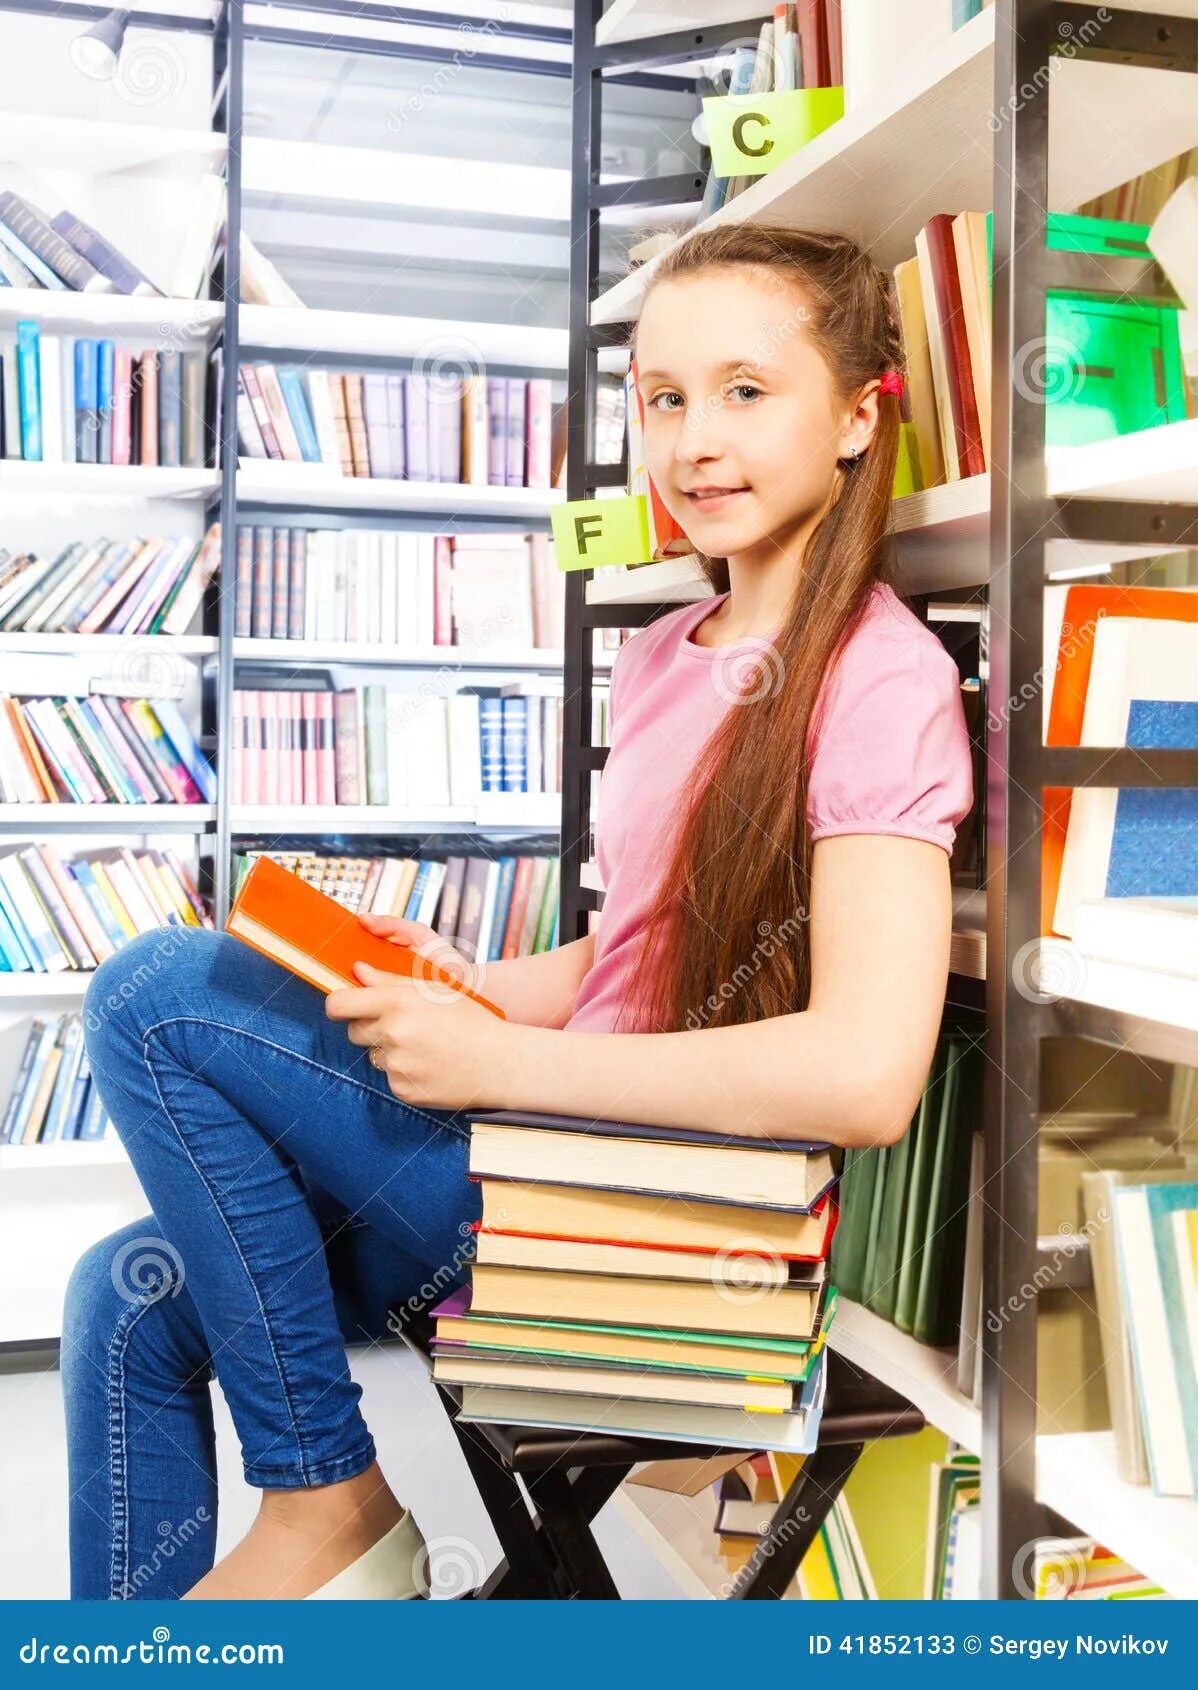 Сидит в библиотеке. Девочка сидит в библиотеке. Сидит задумчиво в библиотеке. Девочка на лесенке в библиотеке.